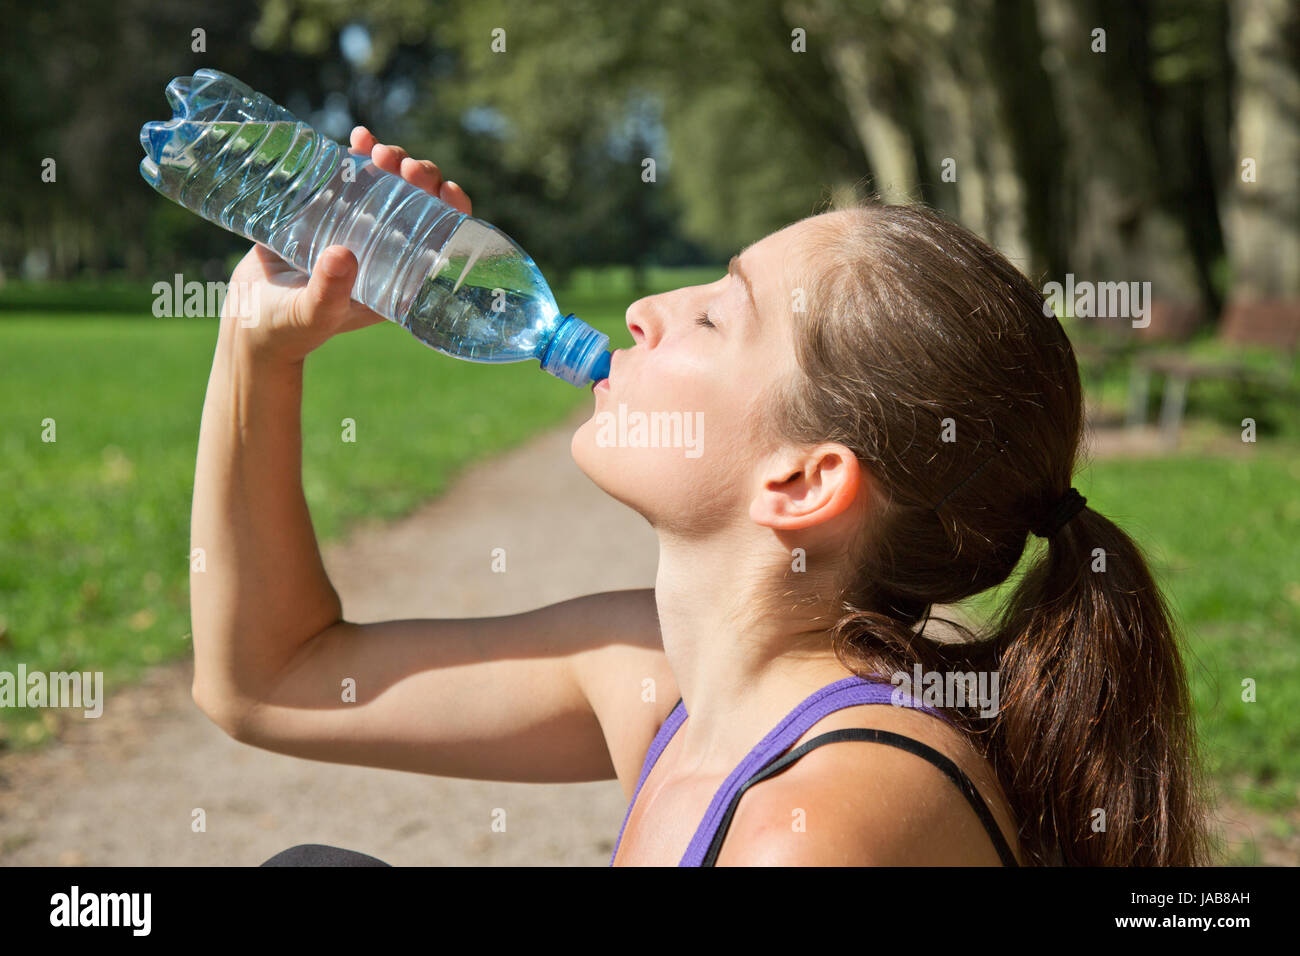 Eine attraktive sportliche Frau trinkt Wasser aus einer Flasche beim deporte oder Joggen Foto de stock